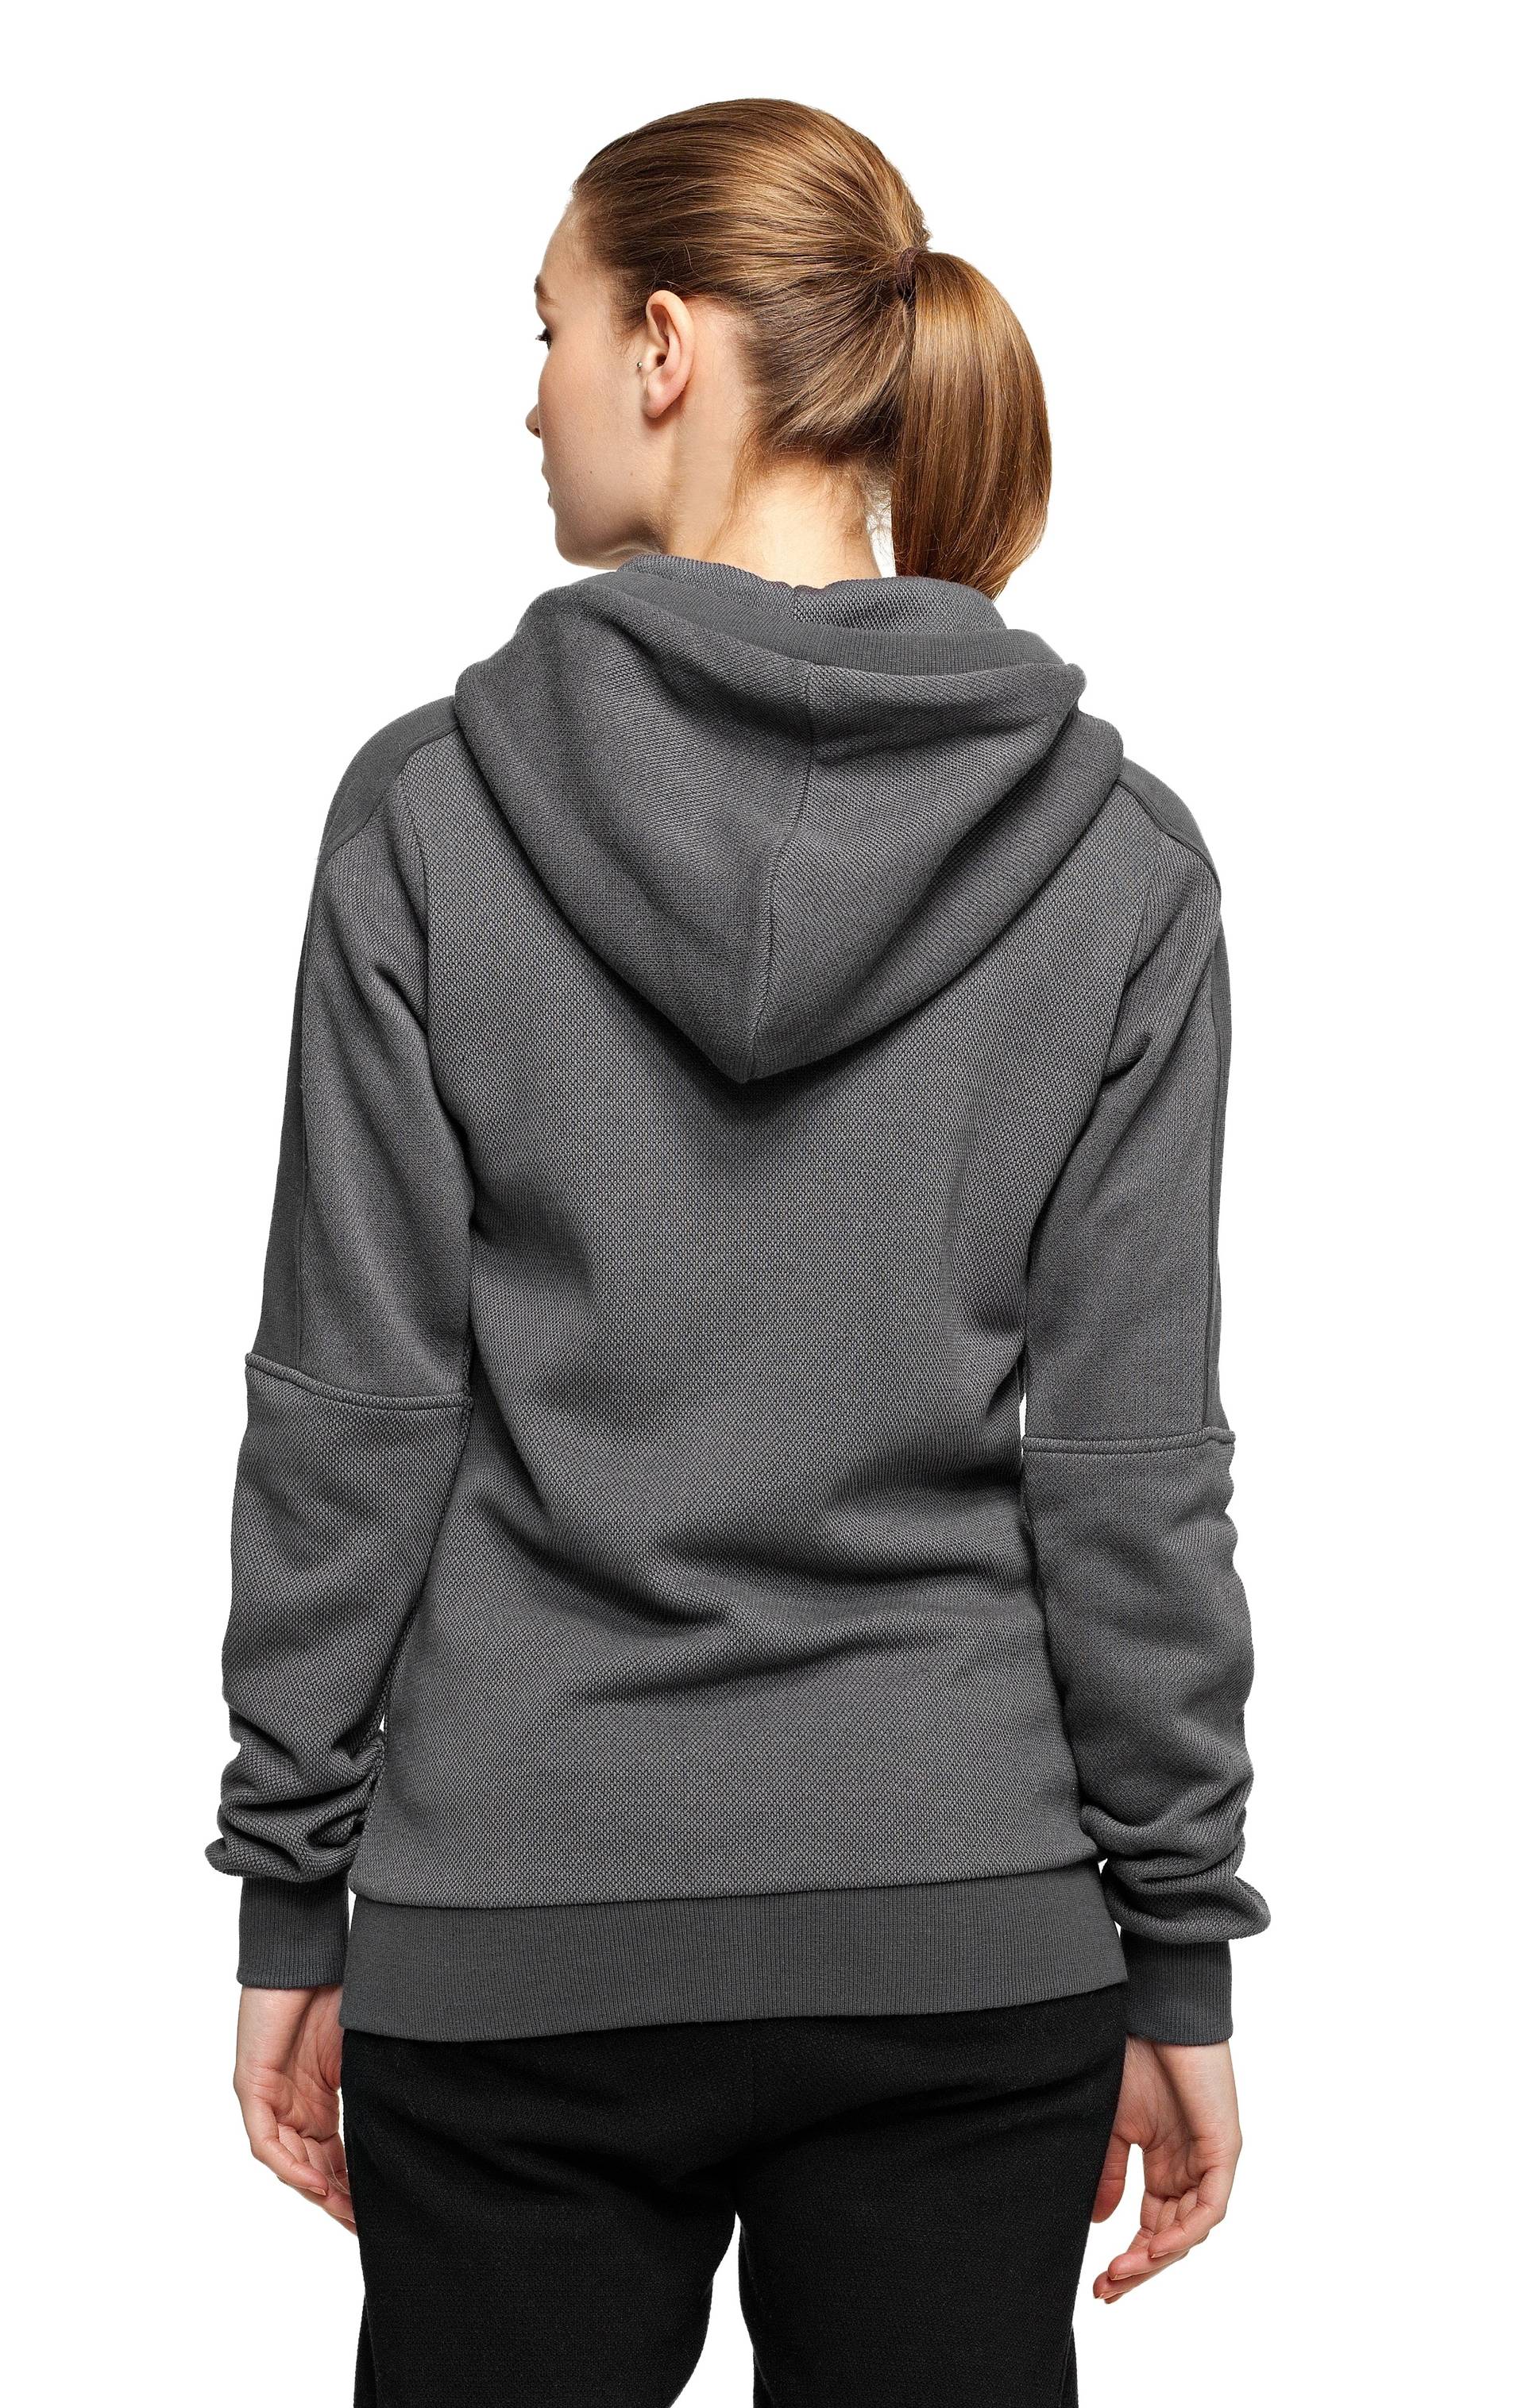 Grey Melange Full Sleeves Mens Zipper Hoodie Sweatshirt, Size: Large at Rs  460/piece in Tiruppur